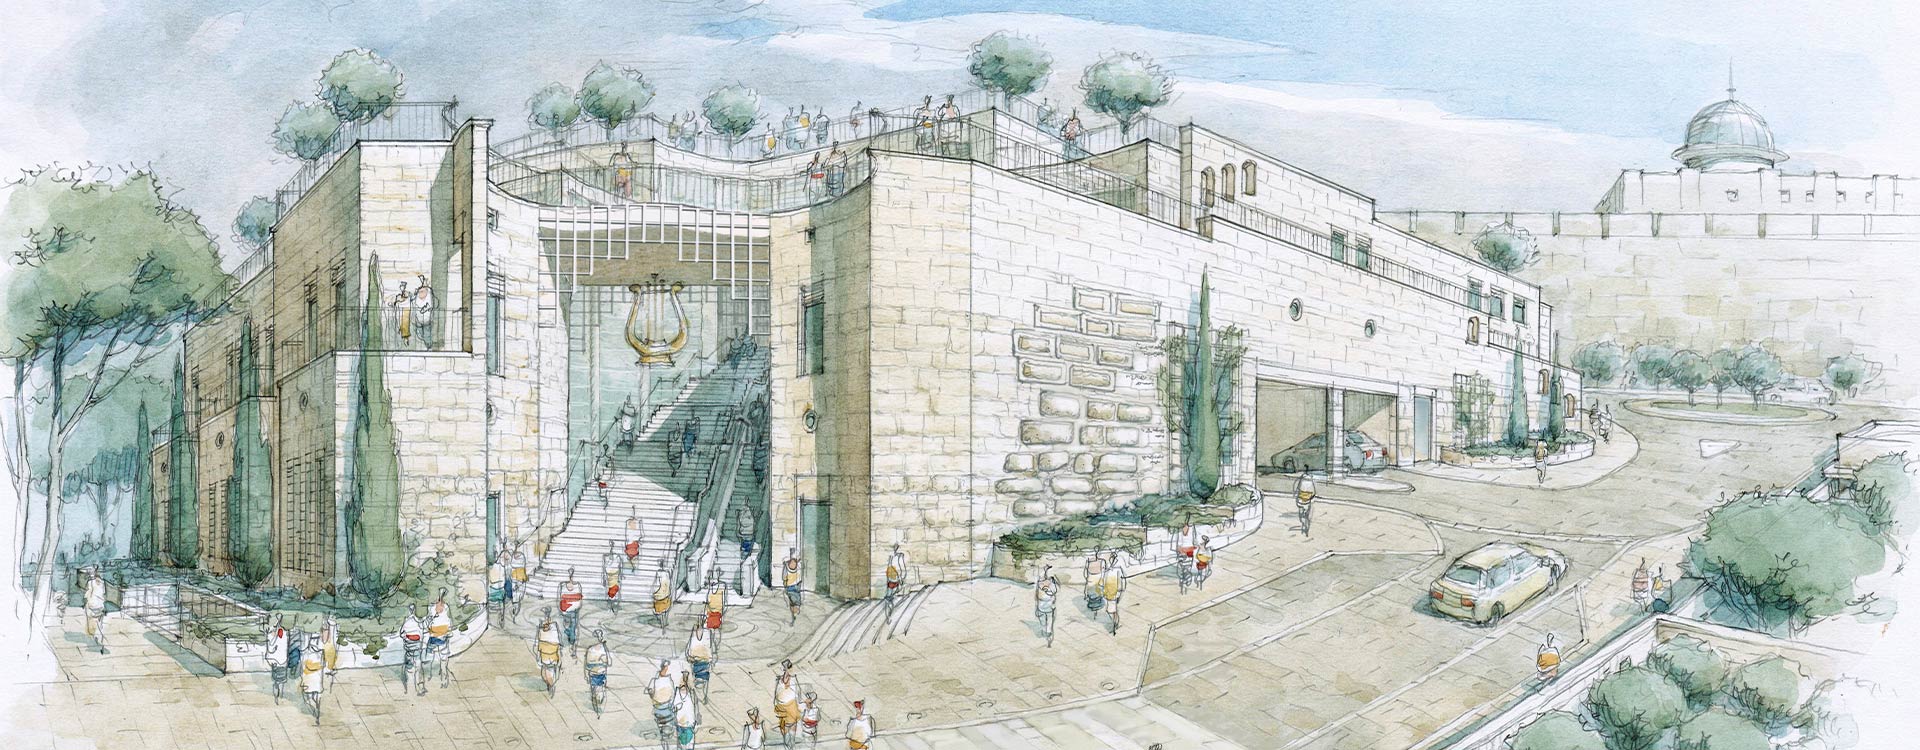 הקמת מרכז מבקרים קדם, ירושלים